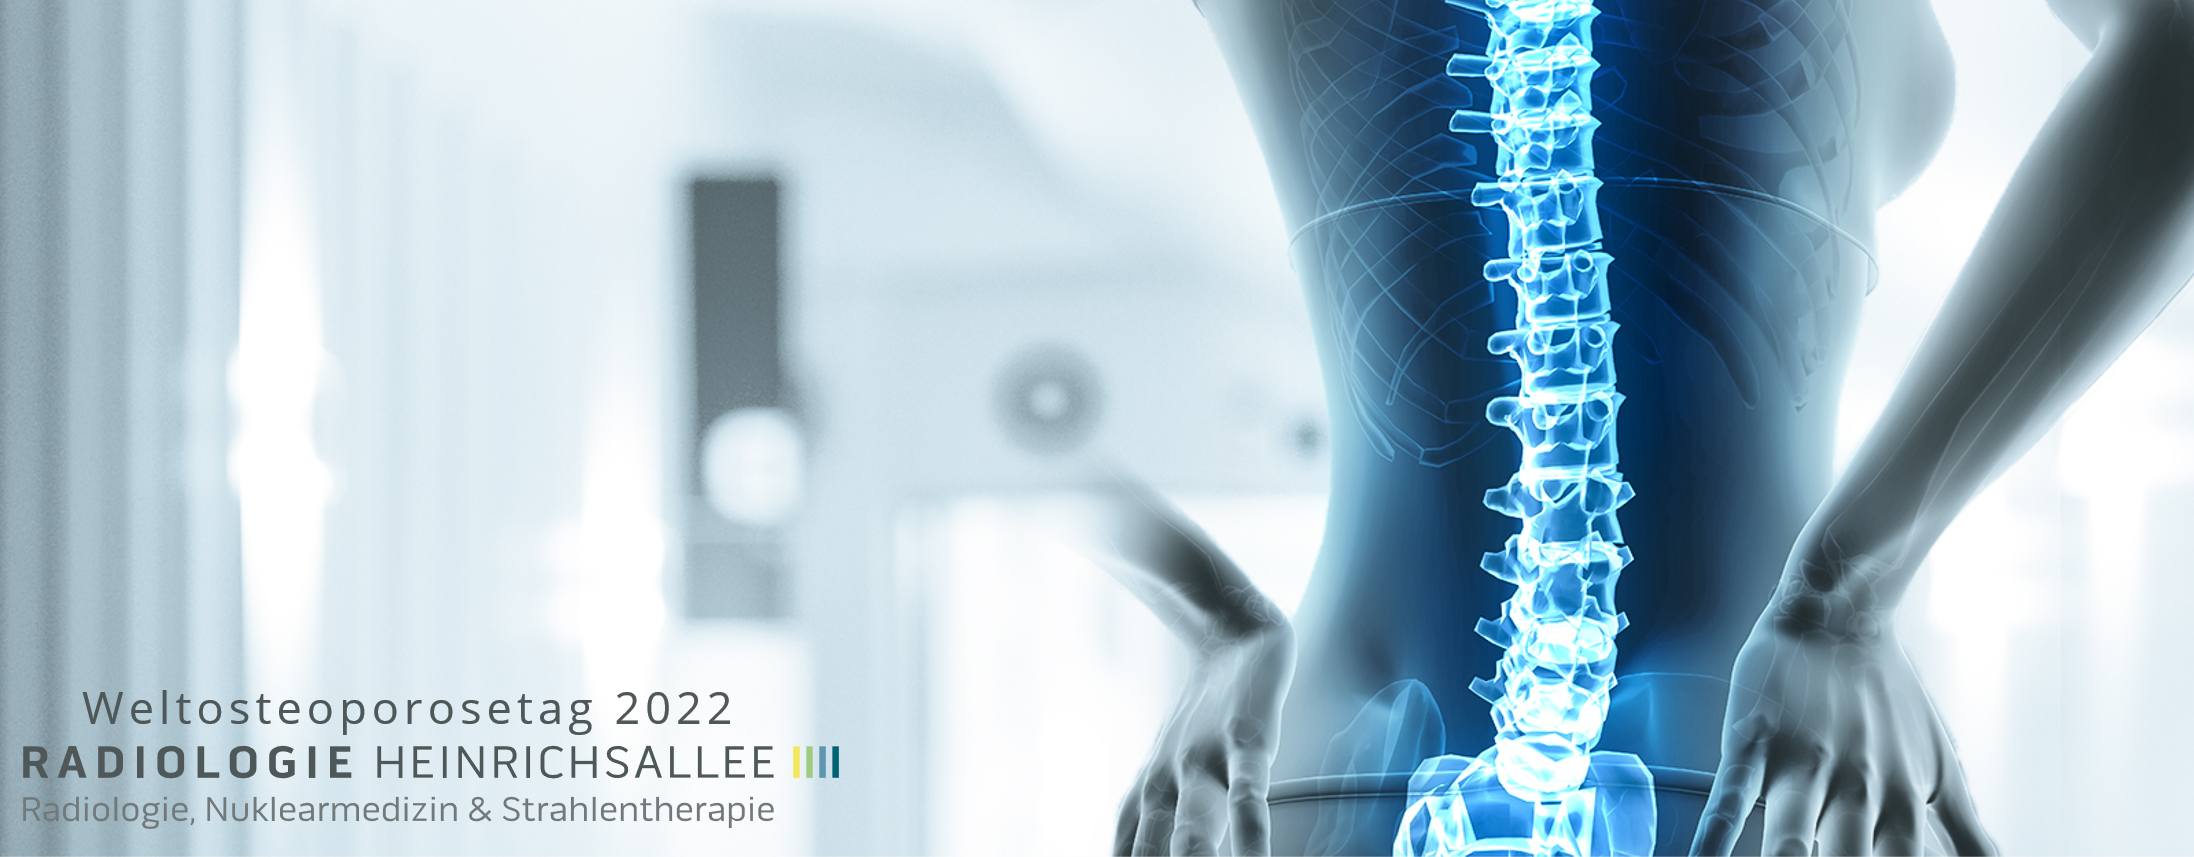 News | Radiologie Heinrichsallee | Weltosteoporosetag 2022